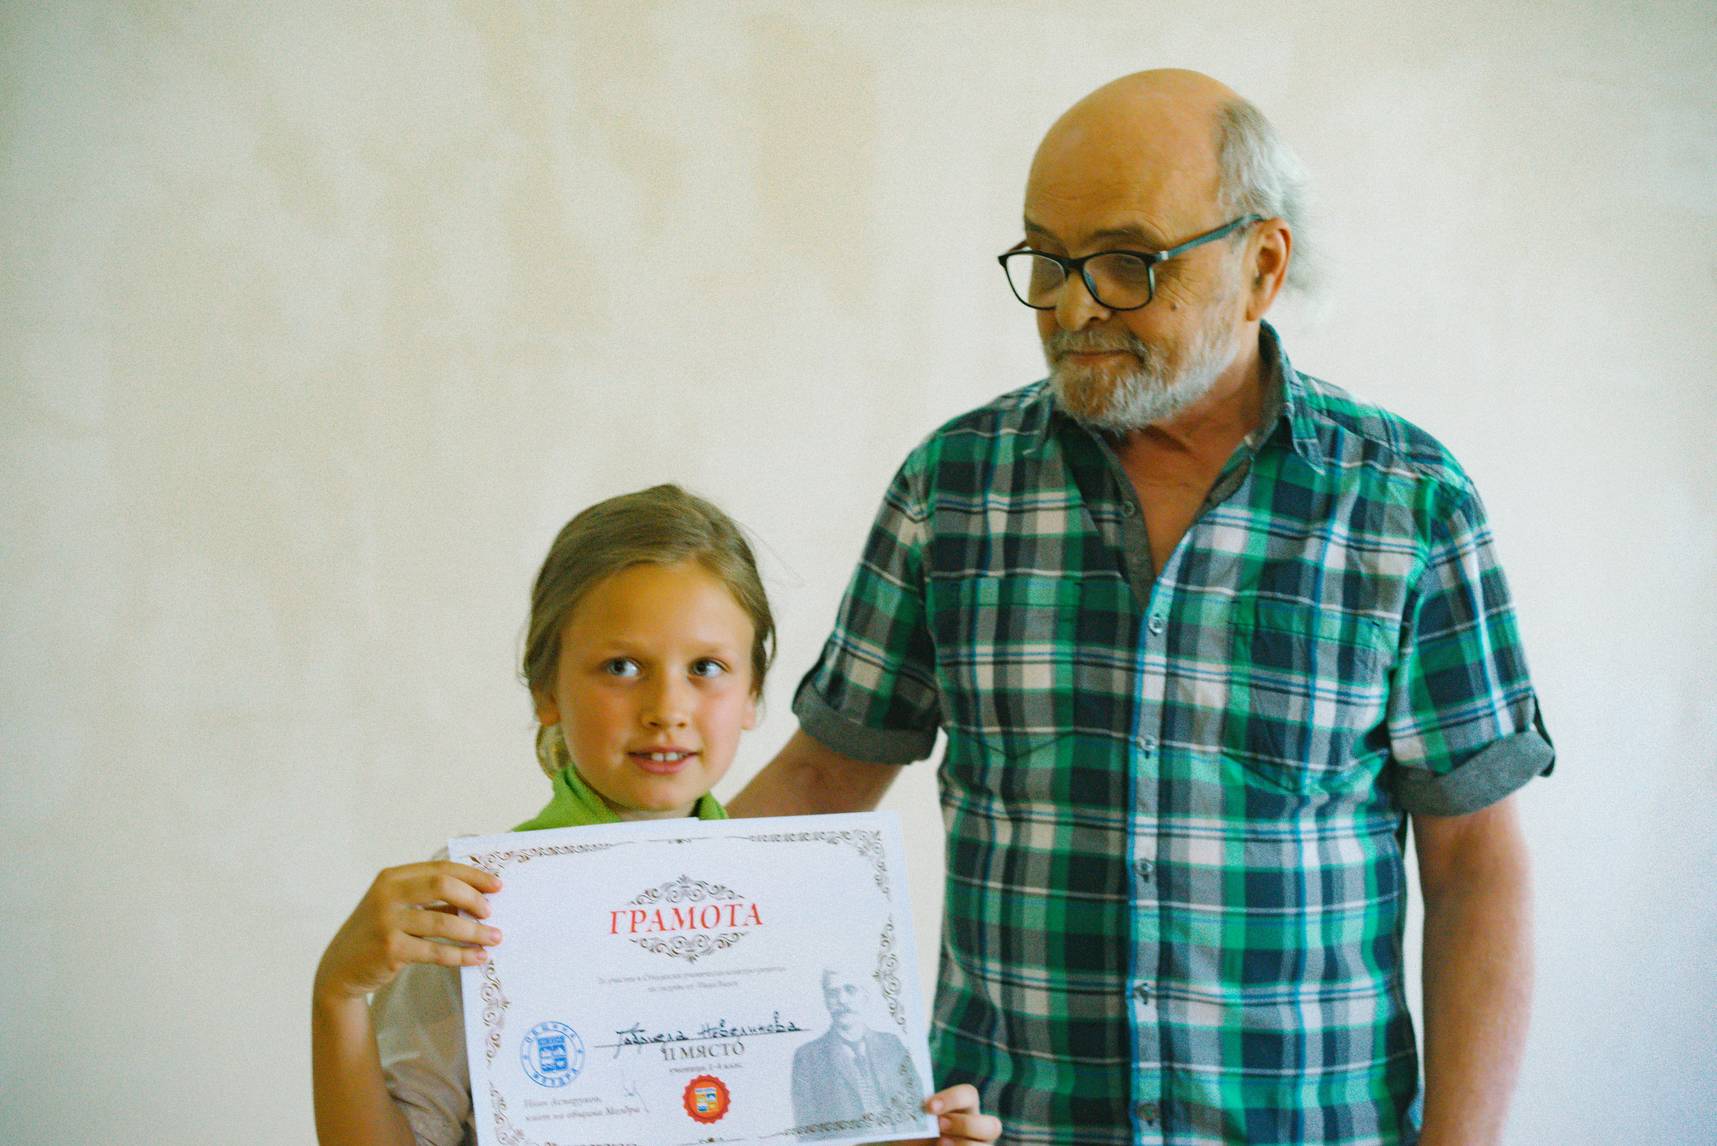 Приключи Вторият общински детски конкурс рецитал на Вазови творби в Мездра